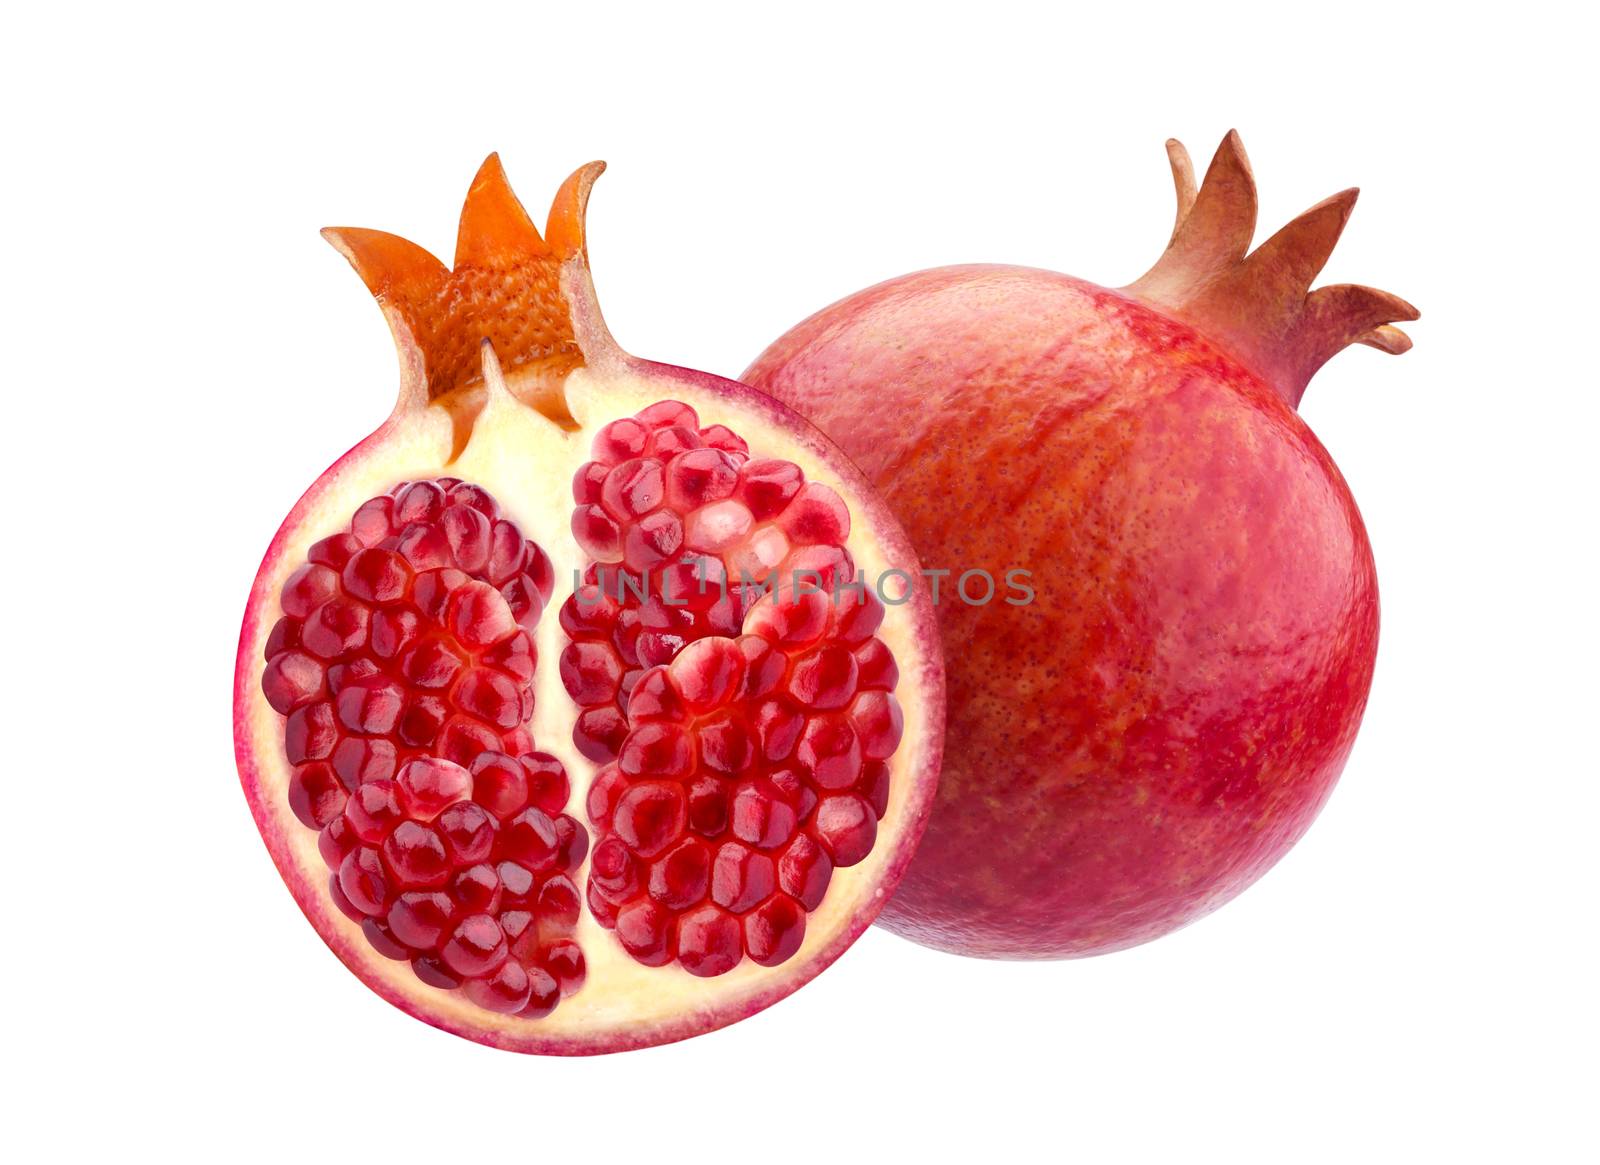 Pomegranate isolated on white background by xamtiw